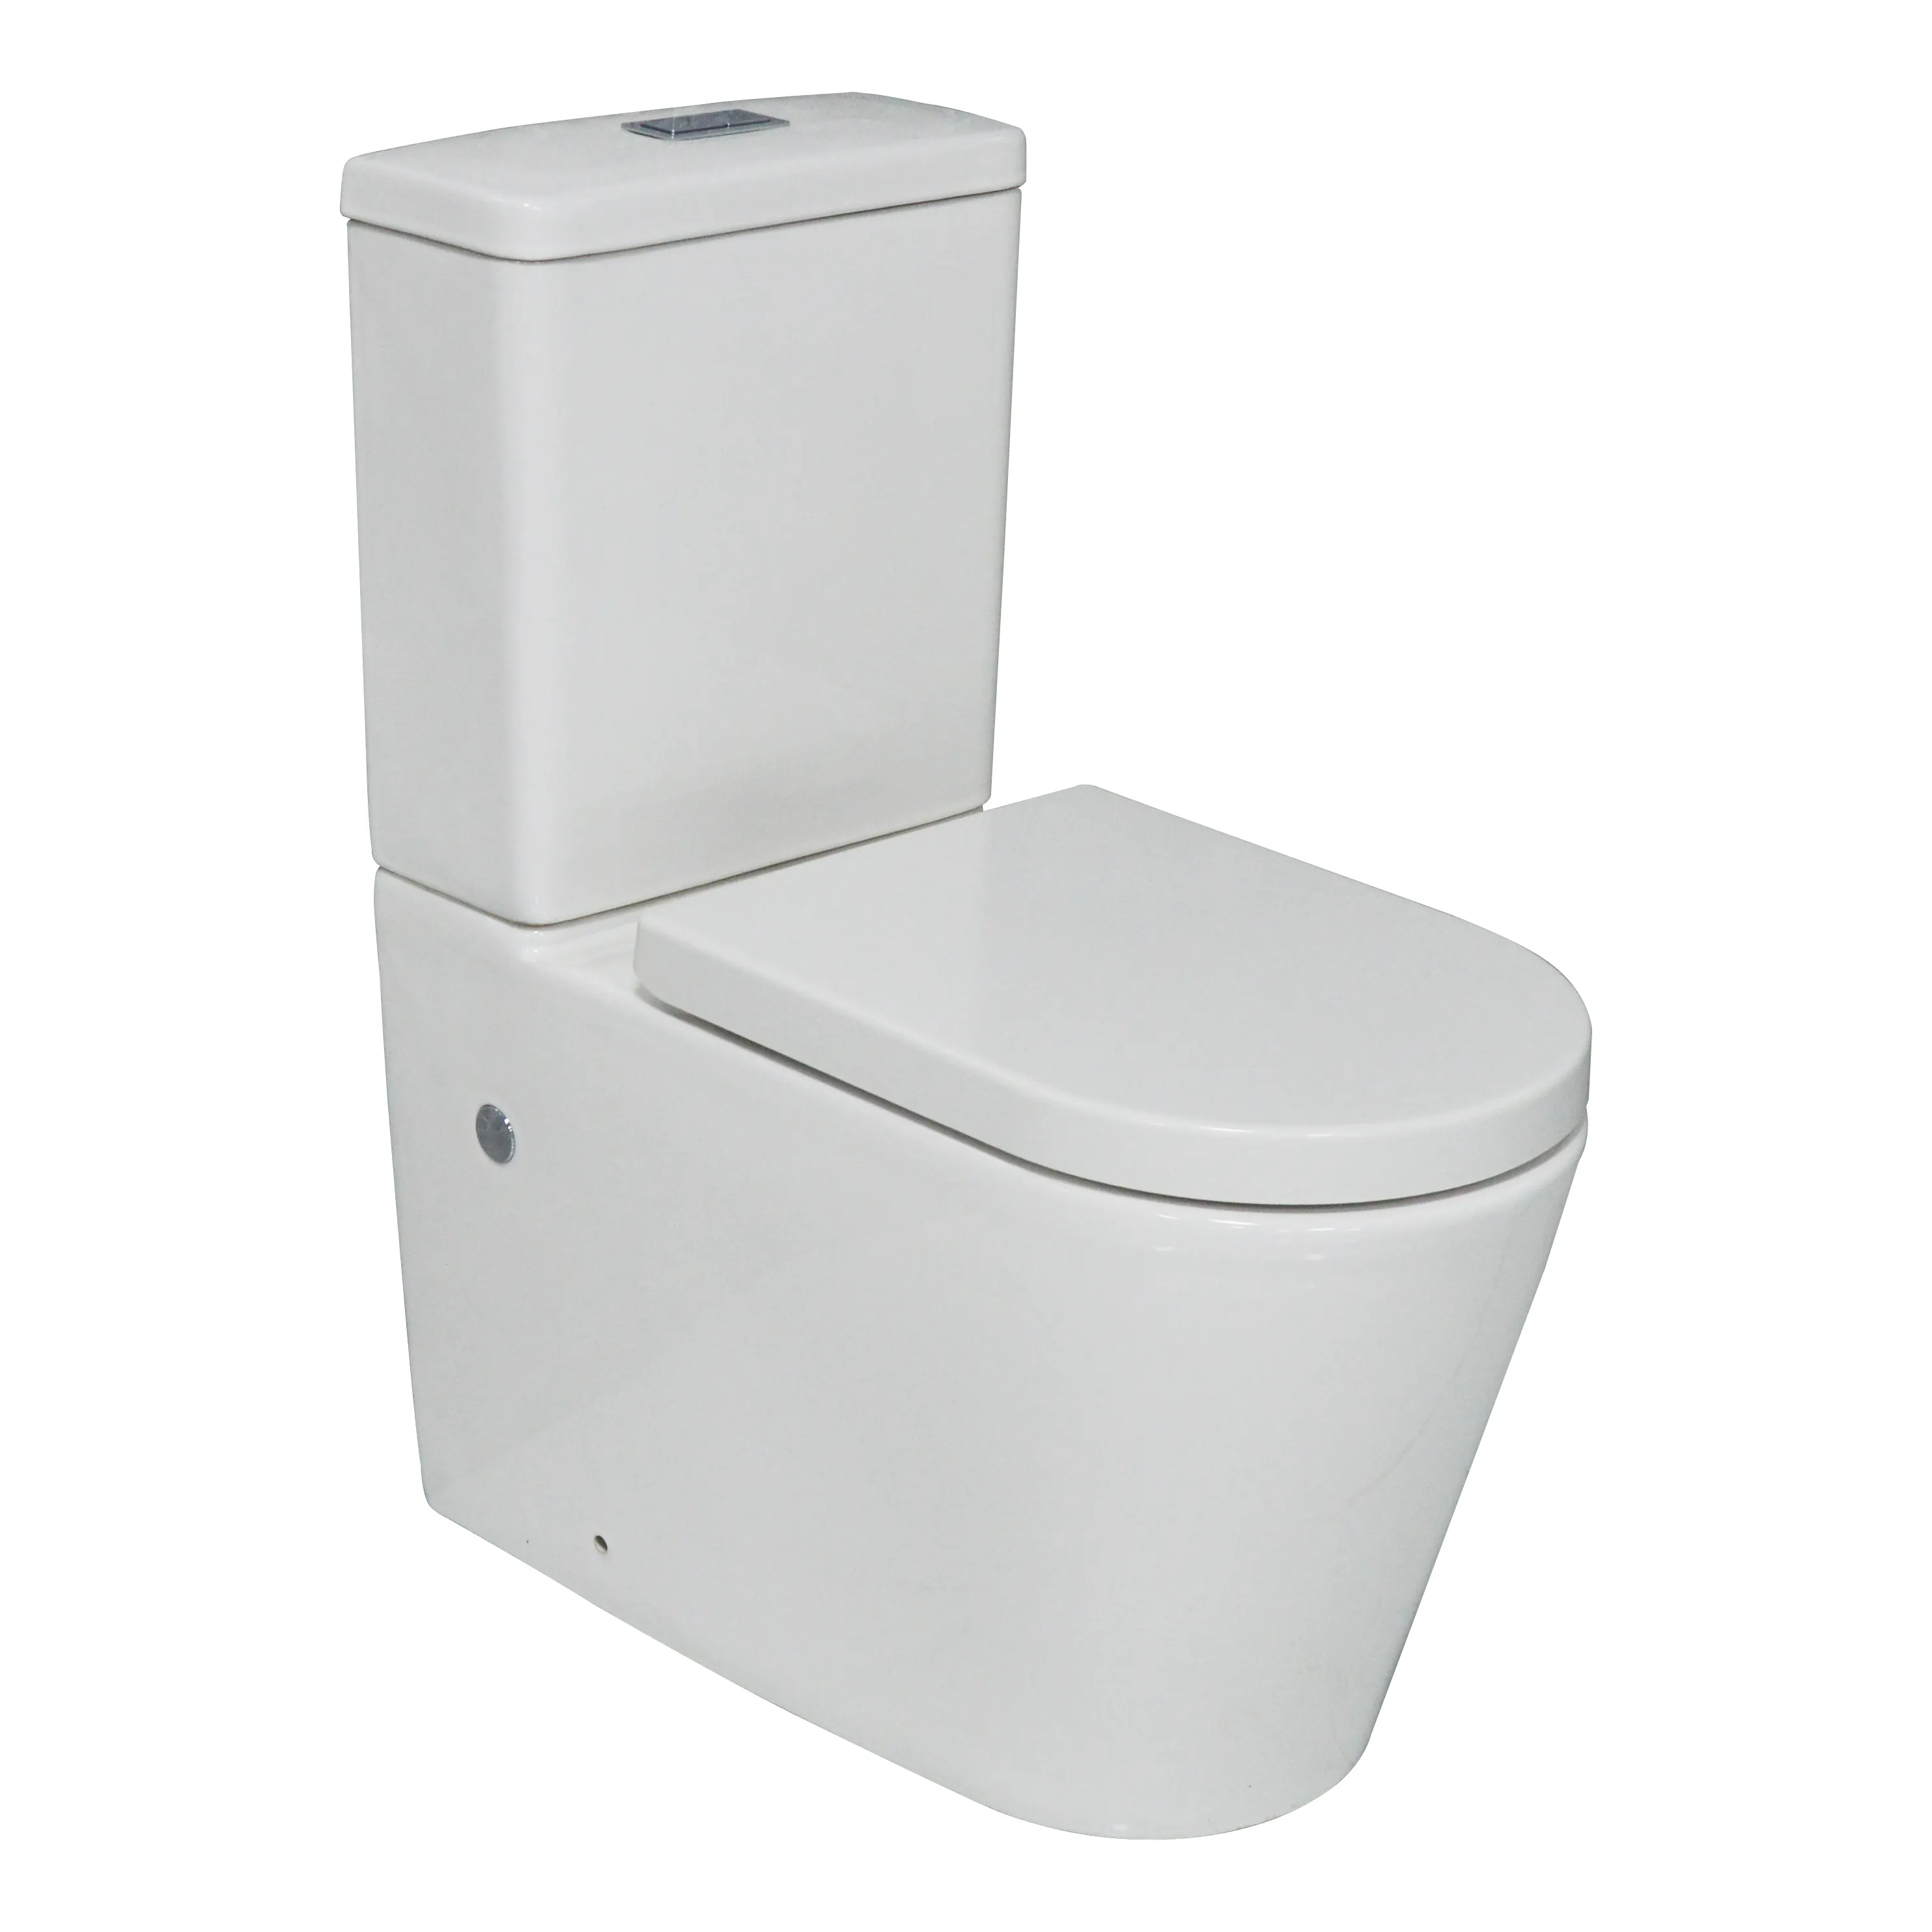 Toilet Australia Watermark Toilet Chaozhou Konstruksi Toilet A3988C